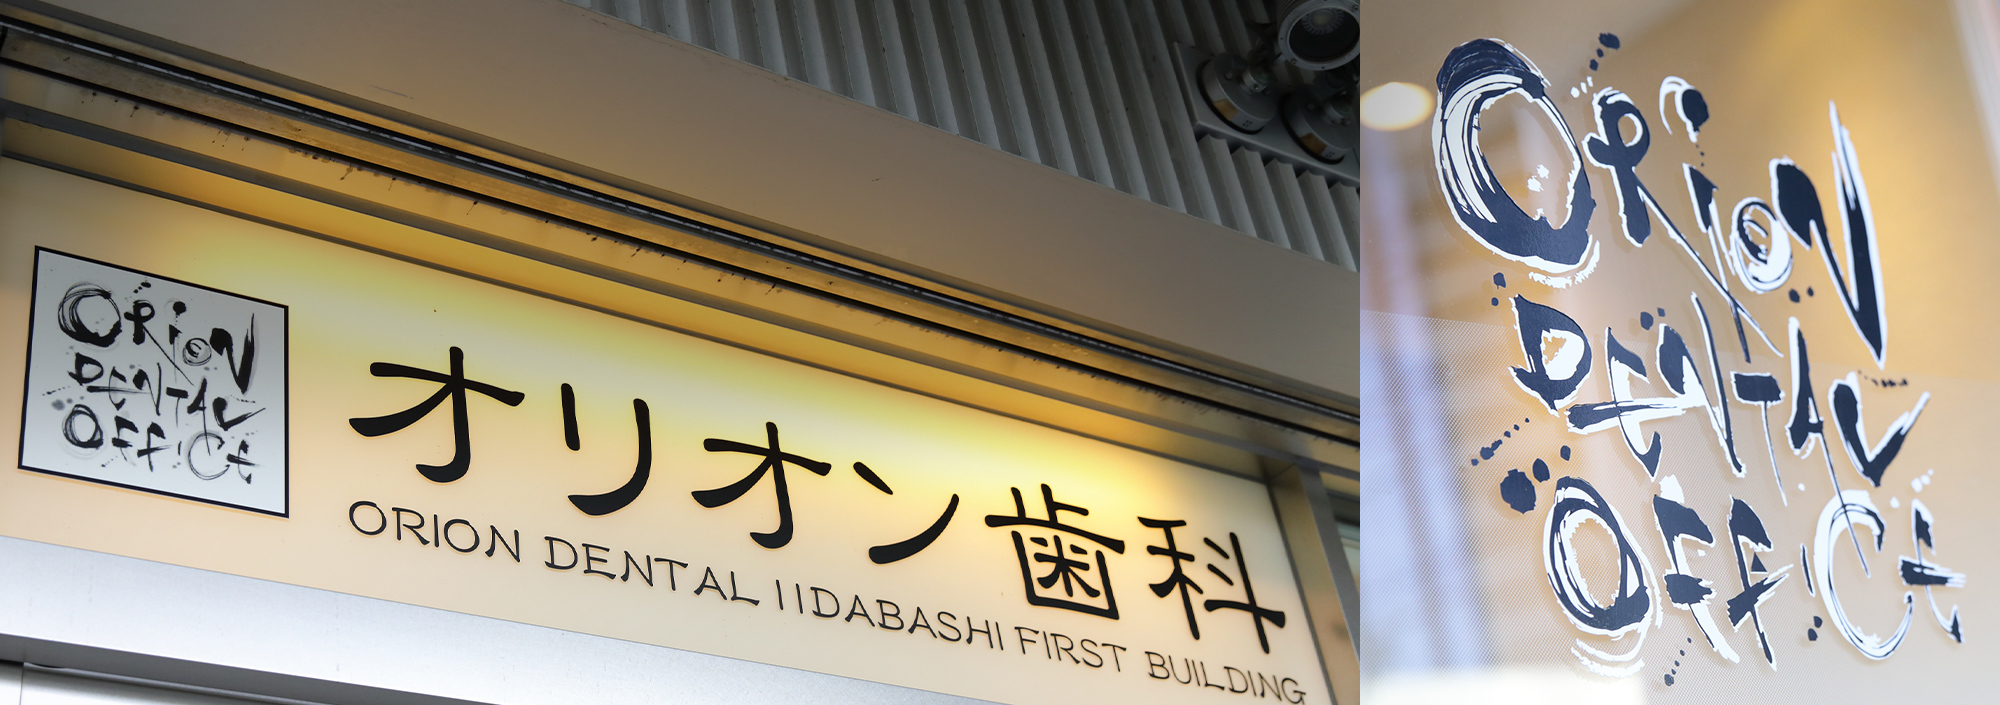 飯田橋ファーストビル1階 患者様目線で最適な歯科医療を提供